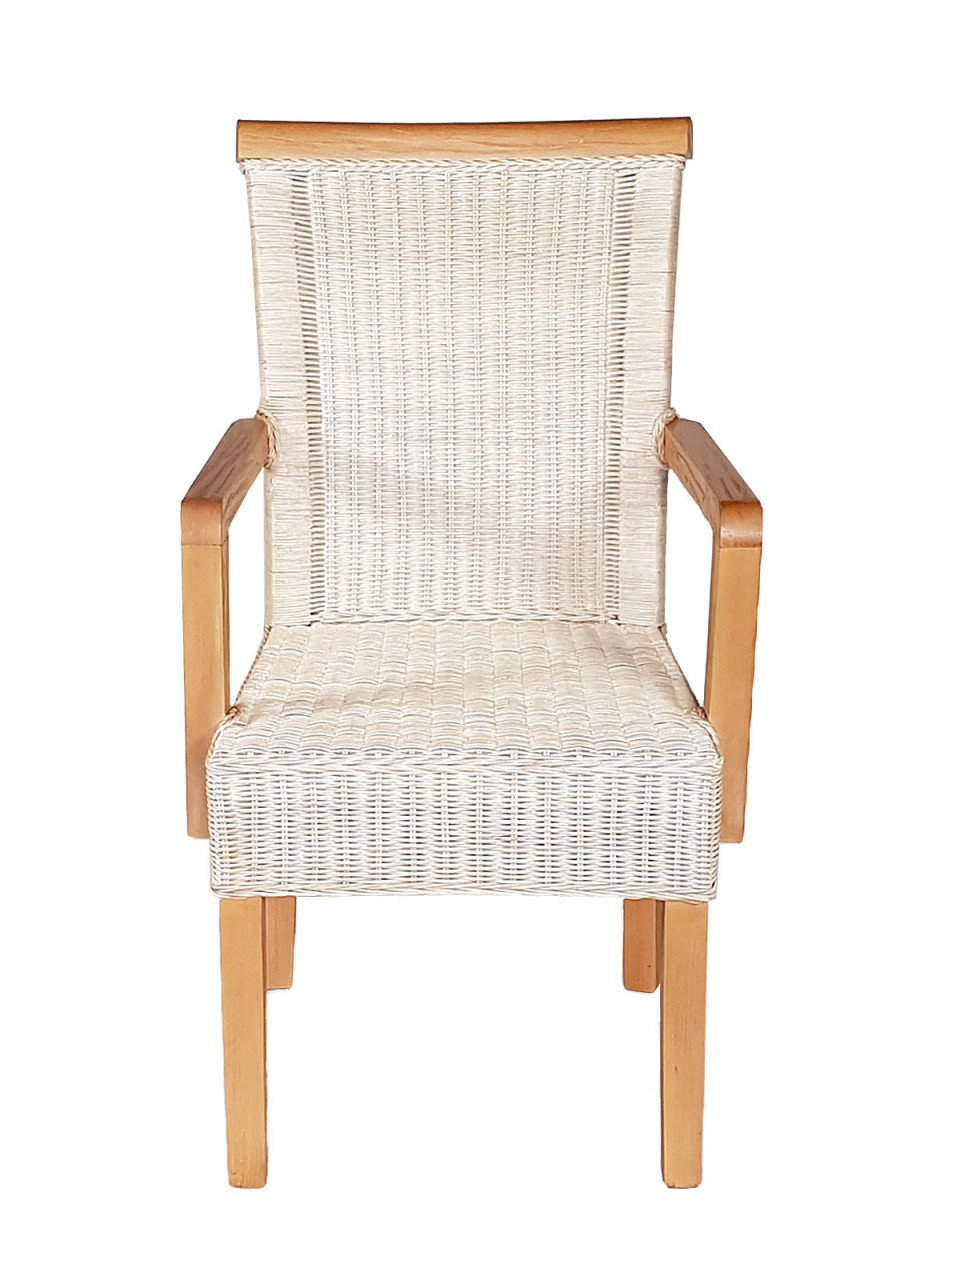 Esszimmer Stühle Set mit Armlehnen 4 Stück Rattanstühle Stuhl weiß Perth Sessel nachhaltig